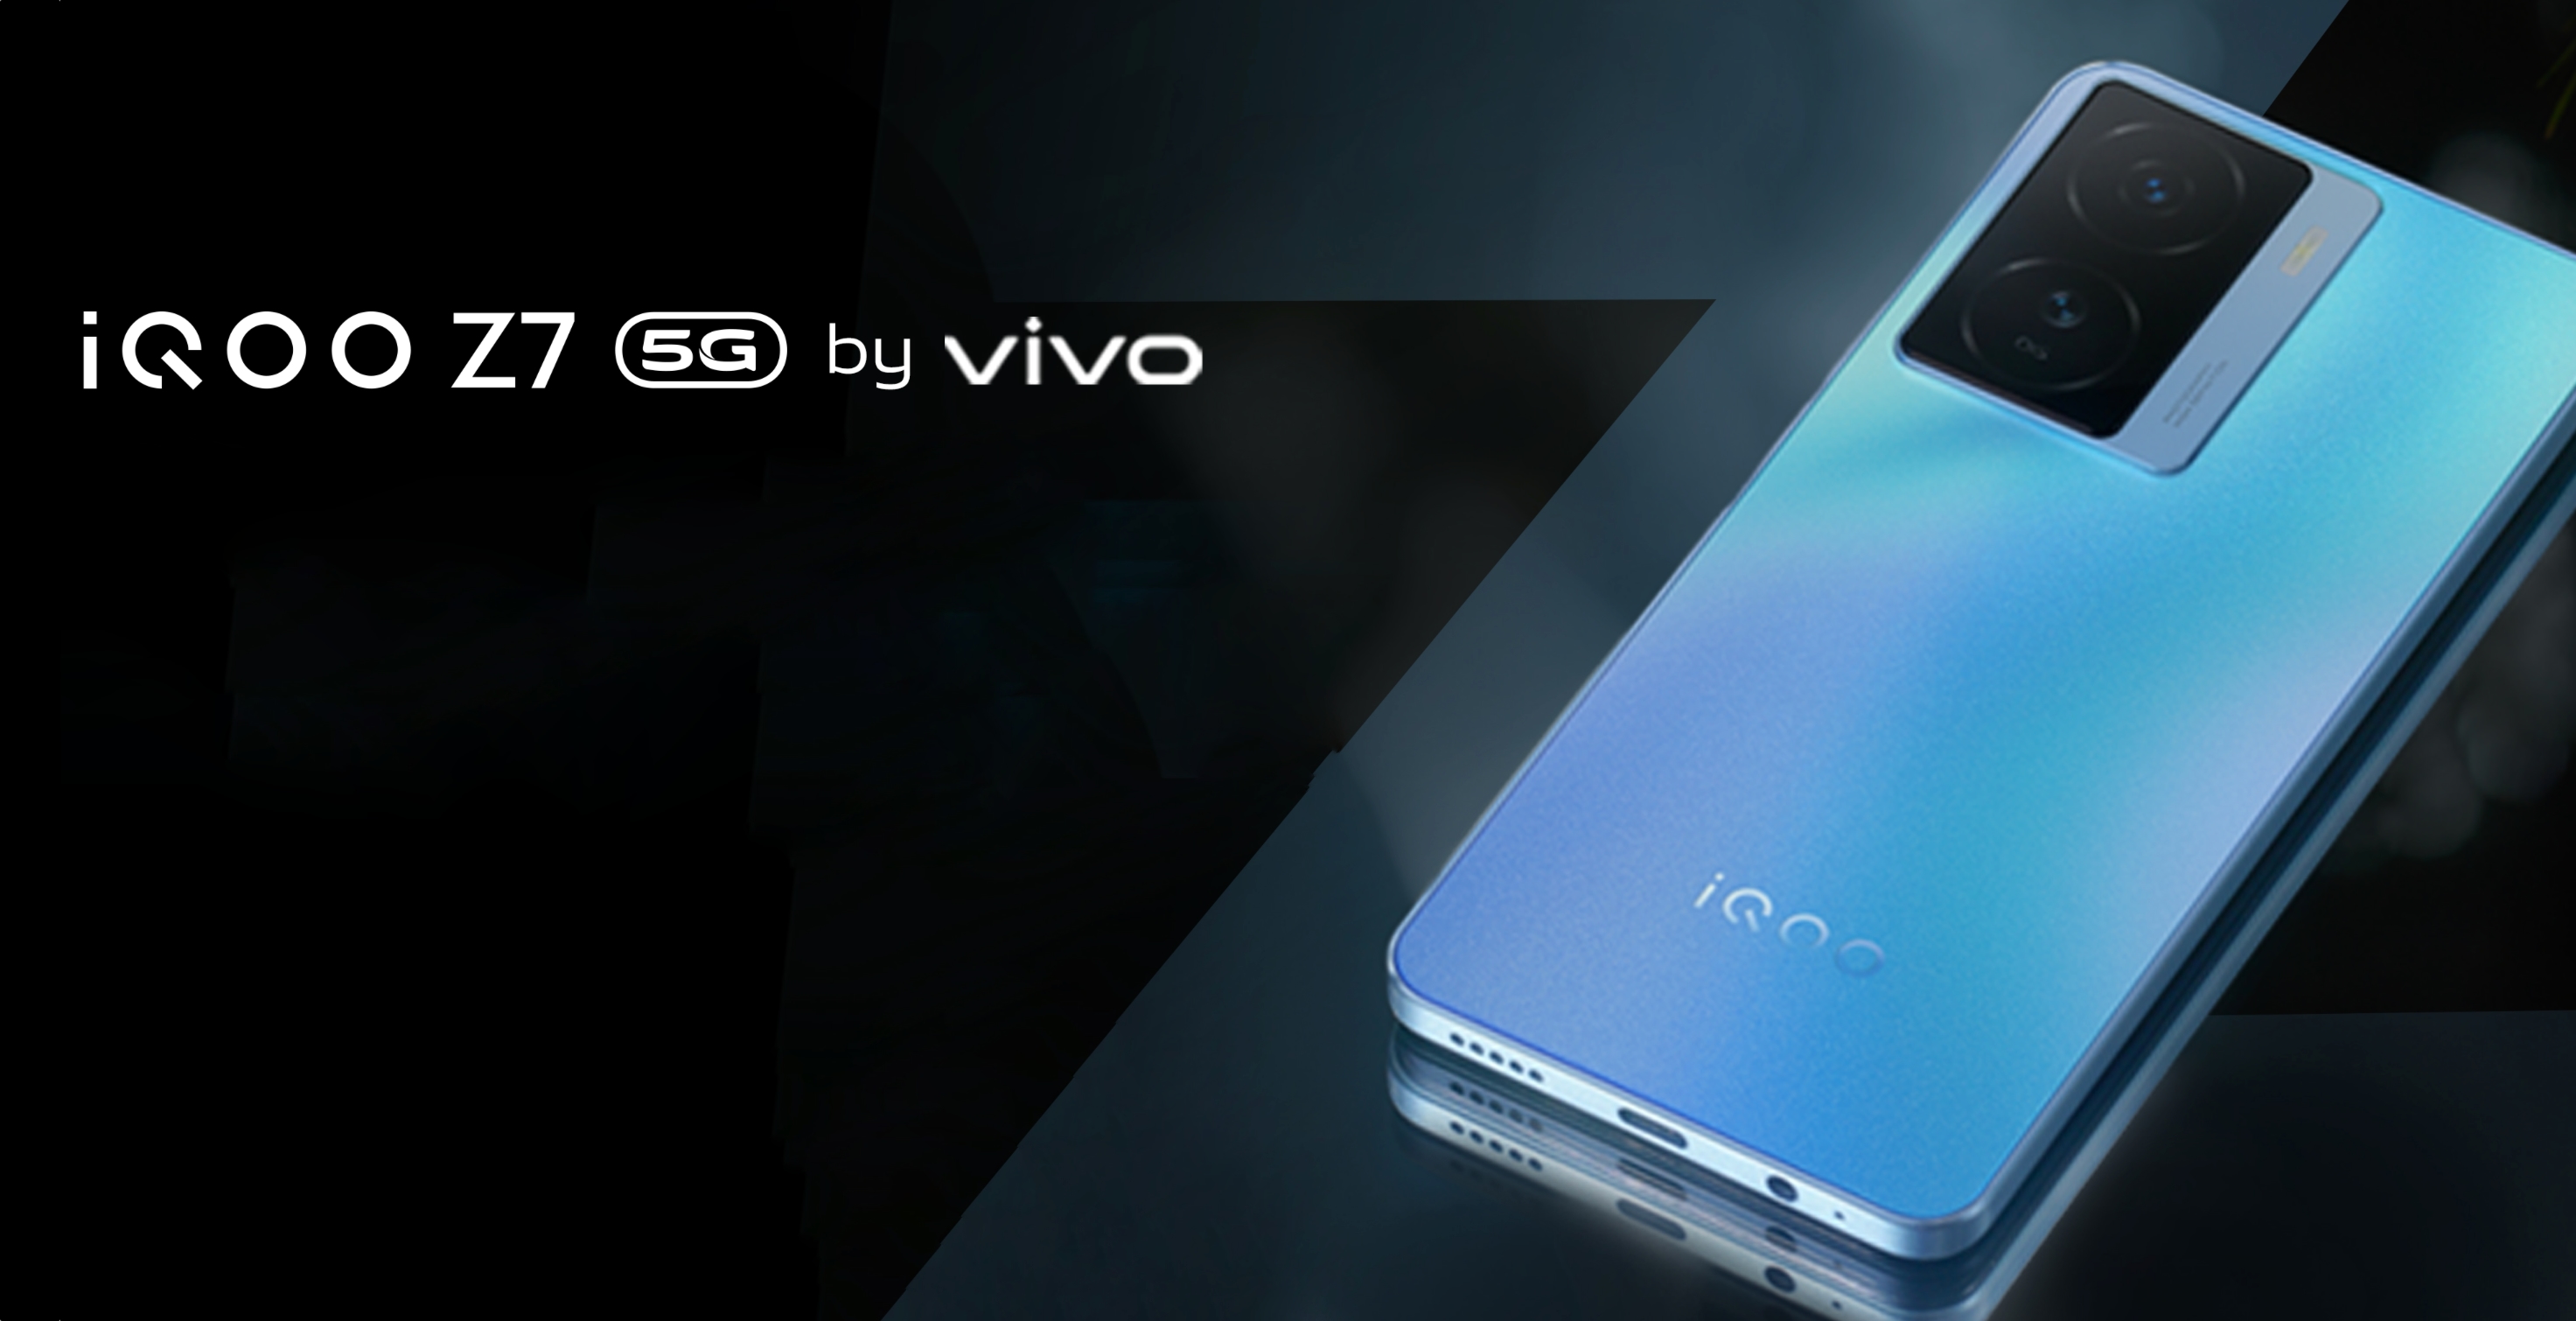 vivo dévoile l'iQOO Z7 5G : écran AMOLED 90Hz, puce MediaTek Dimensity 920 et appareil photo 64MP pour 230$.